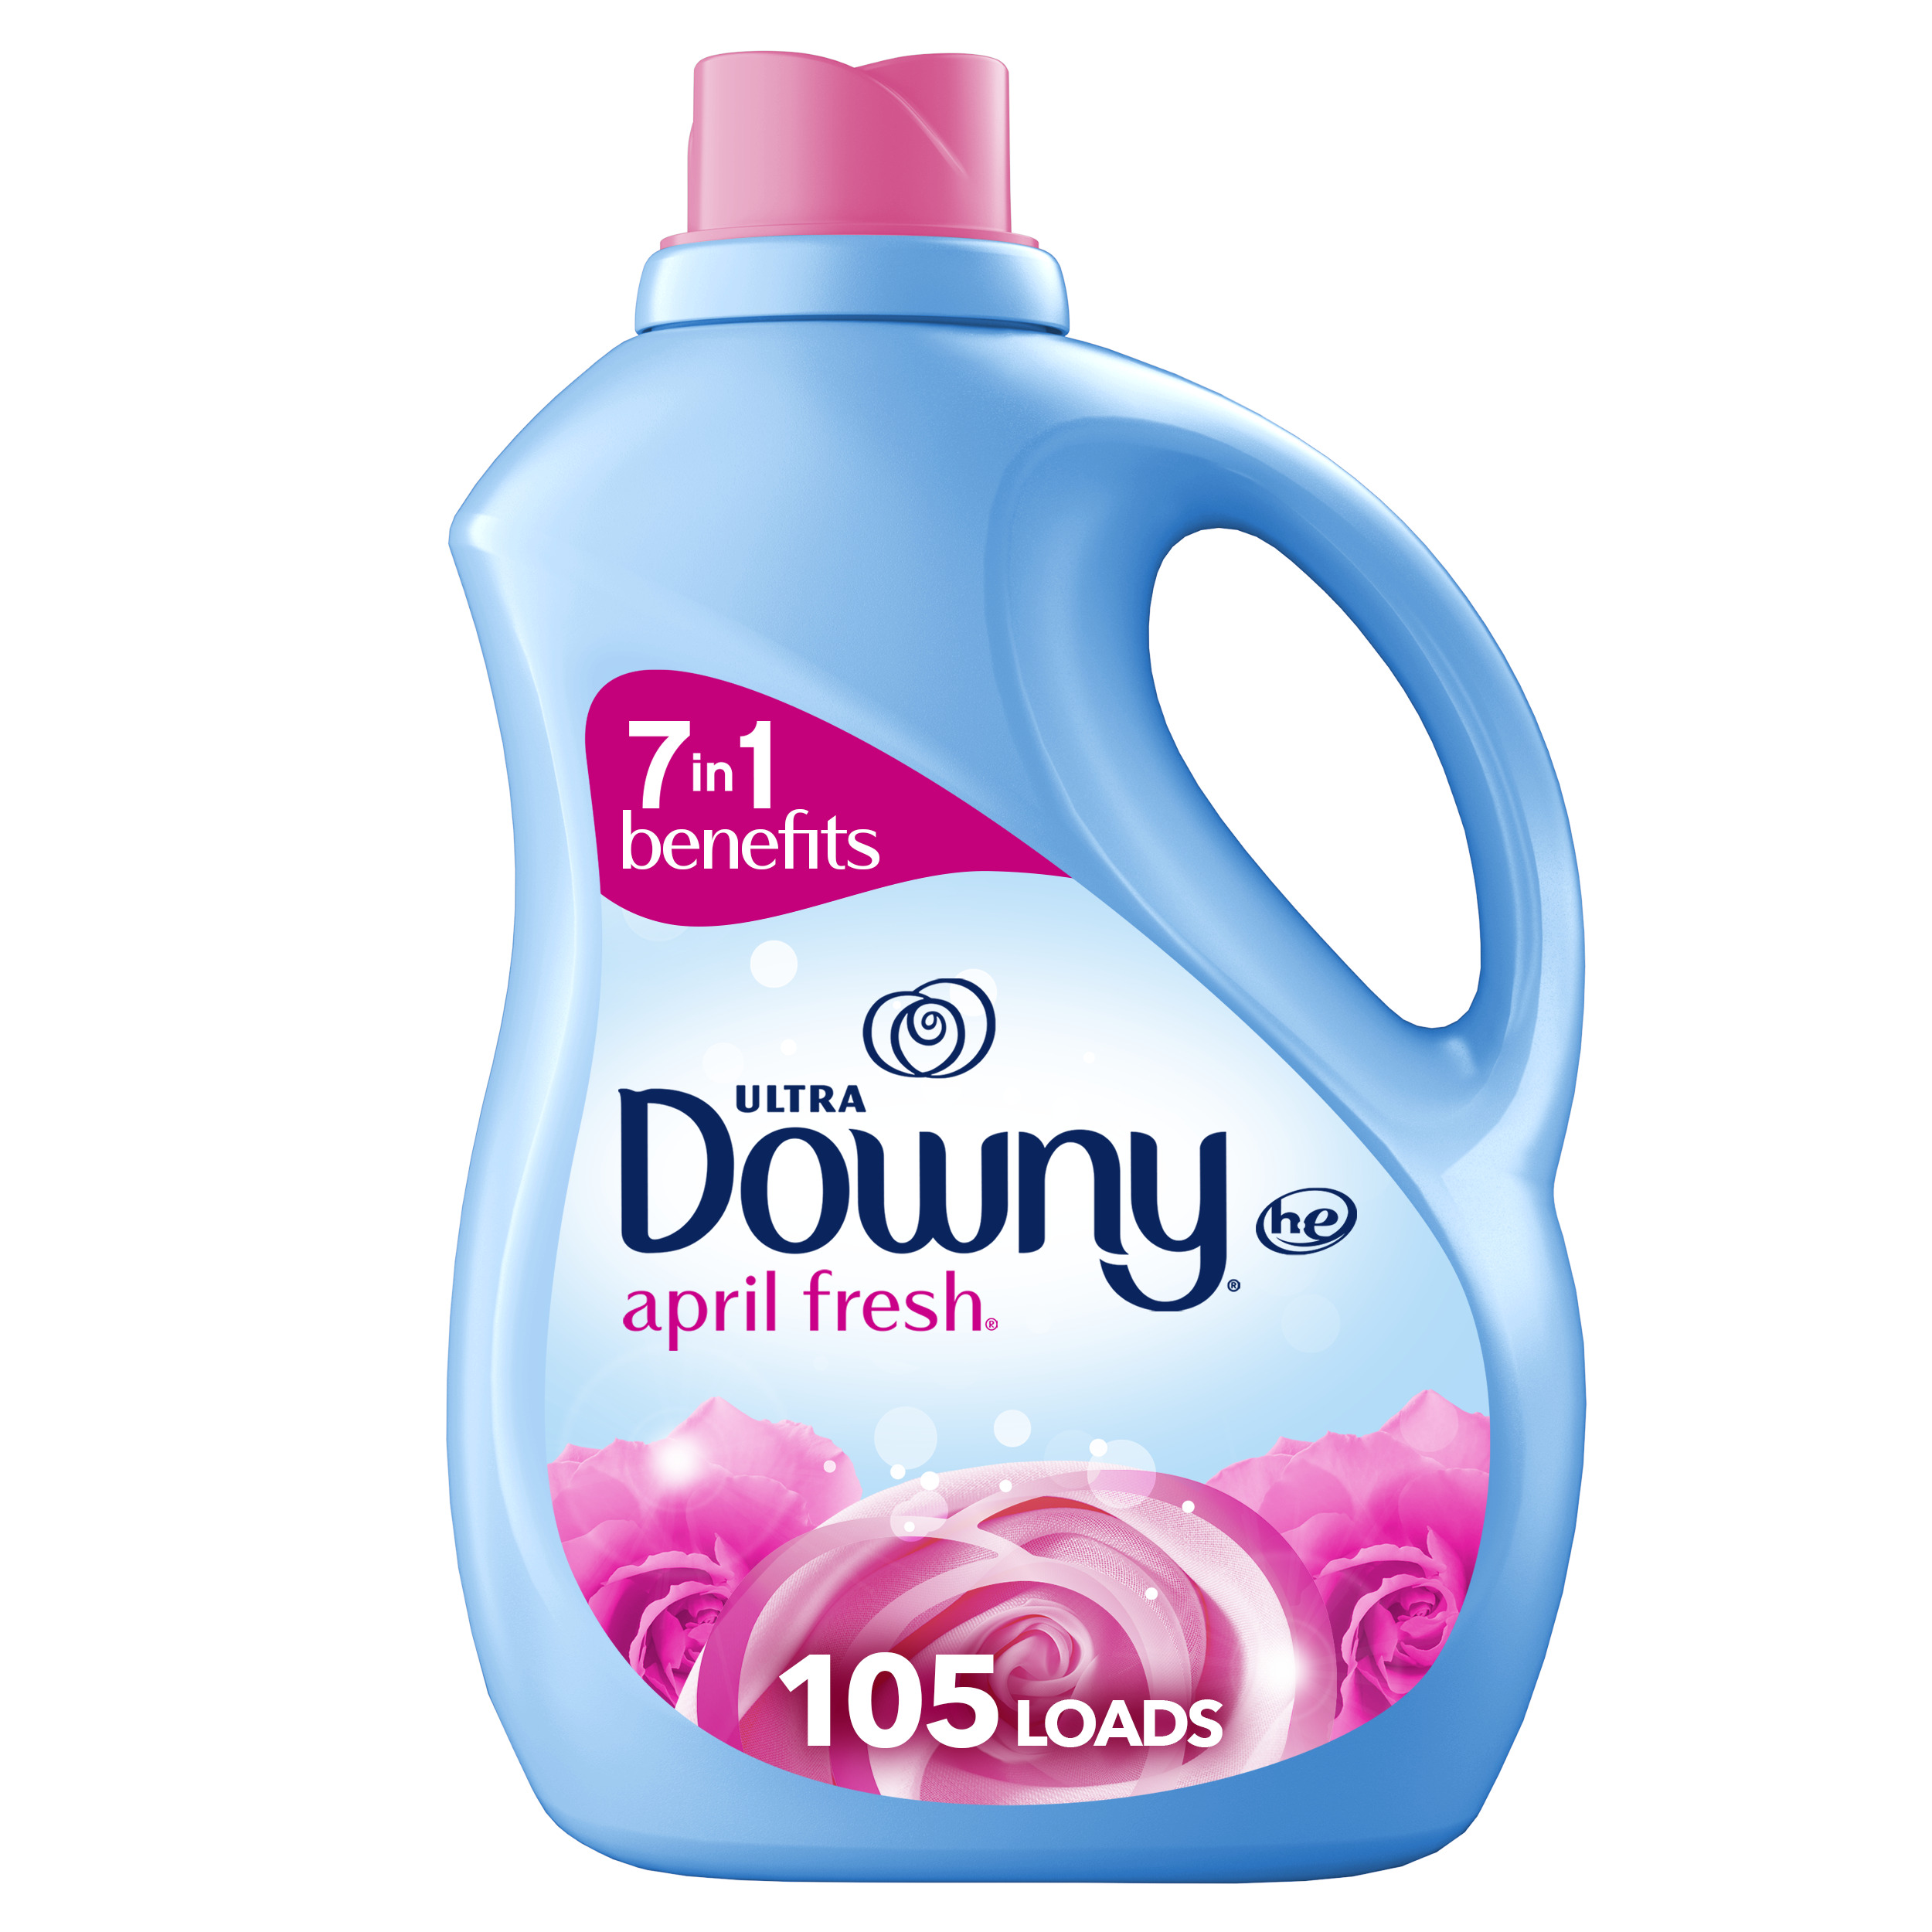 Downy Liquid Fabric Softener, April Fresh, 77 fl oz, 105 Loads - image 1 of 15